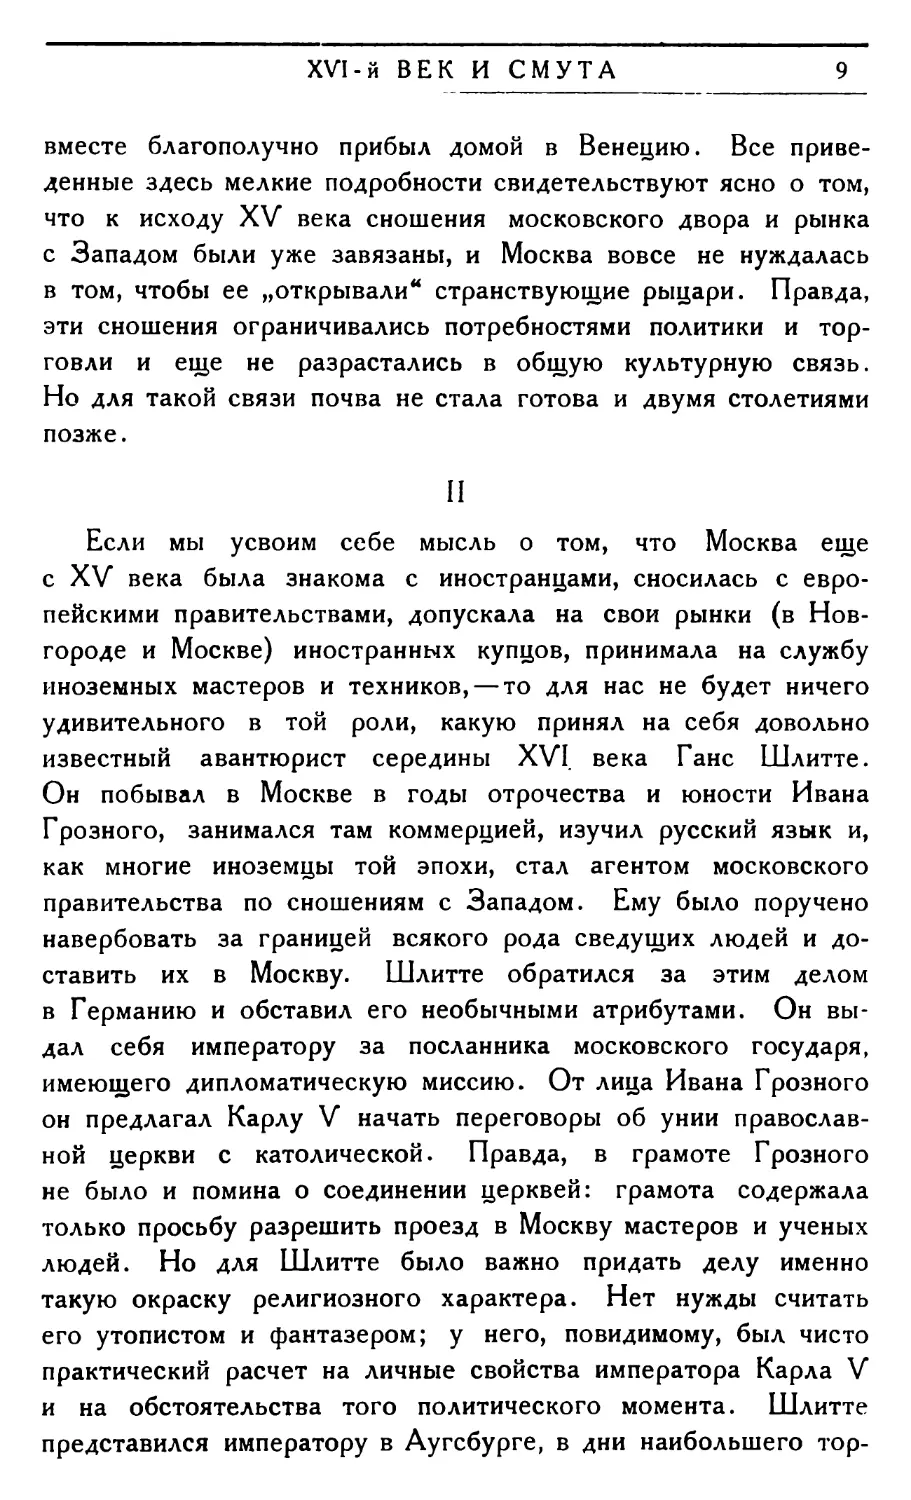 II. Русский вопрос в Европе в середине XVI века